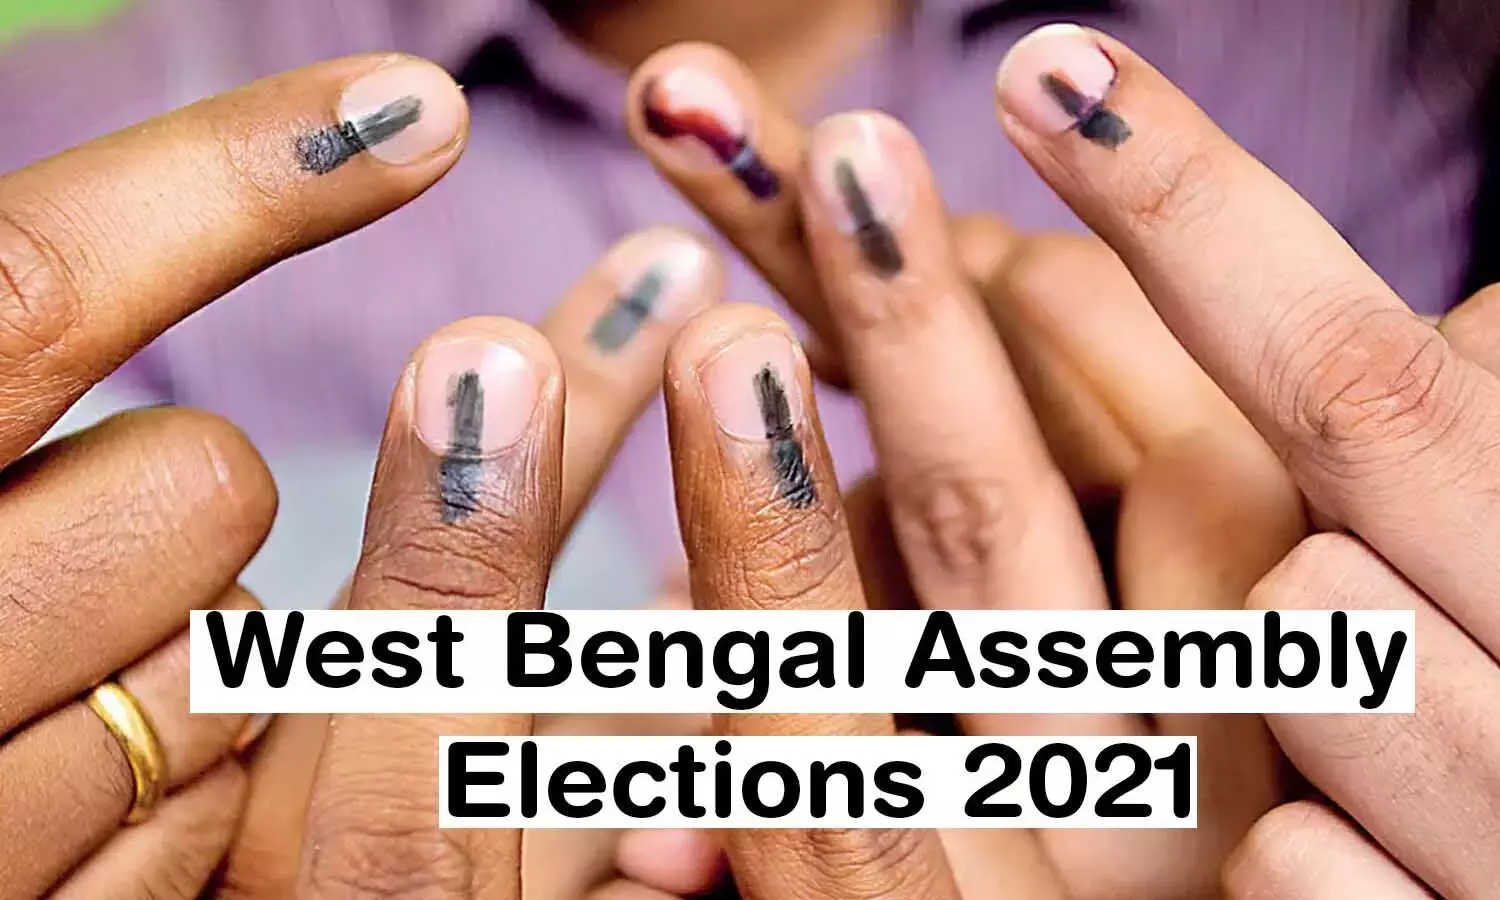 बंगाल में एक साथ होंगे आखिरी दो चरणों के मतदान! जानिए पर्यवेक्षकों की राय